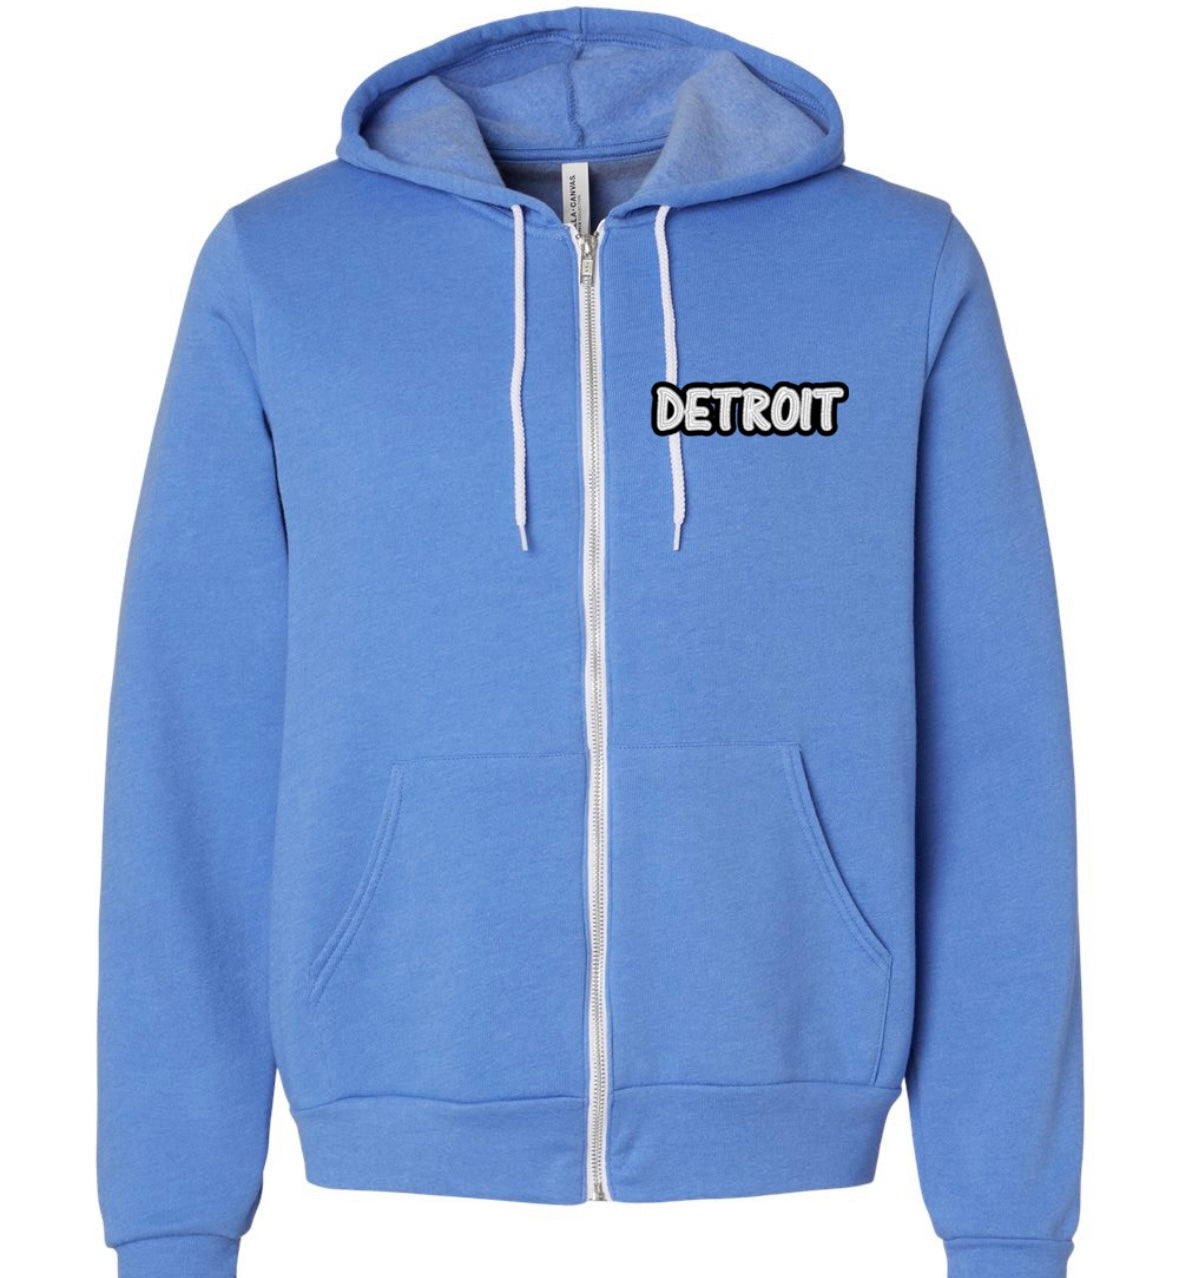 Detroit Zip Sweatshirt